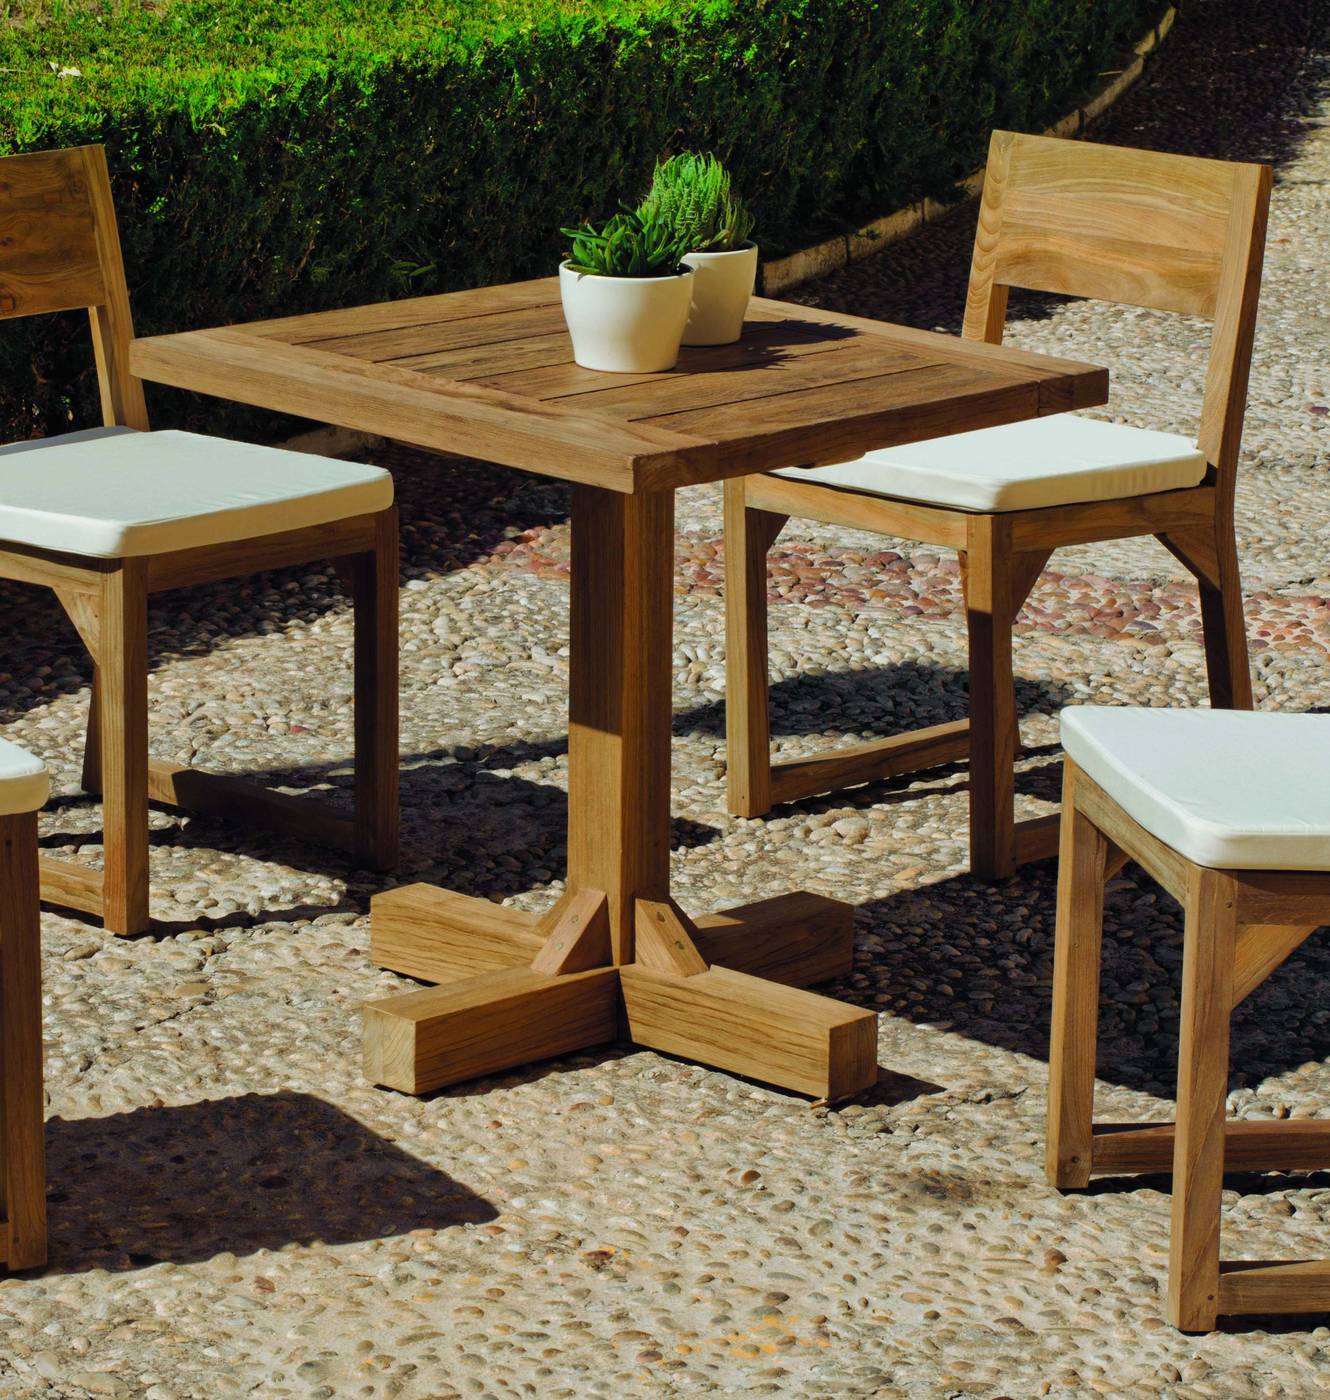 Conjunto Madera Teka Windsor 75-4 - Conjunto para jardín de teka lux: Mesa cuadrada de 75 cm. y 4 sillas con cojines